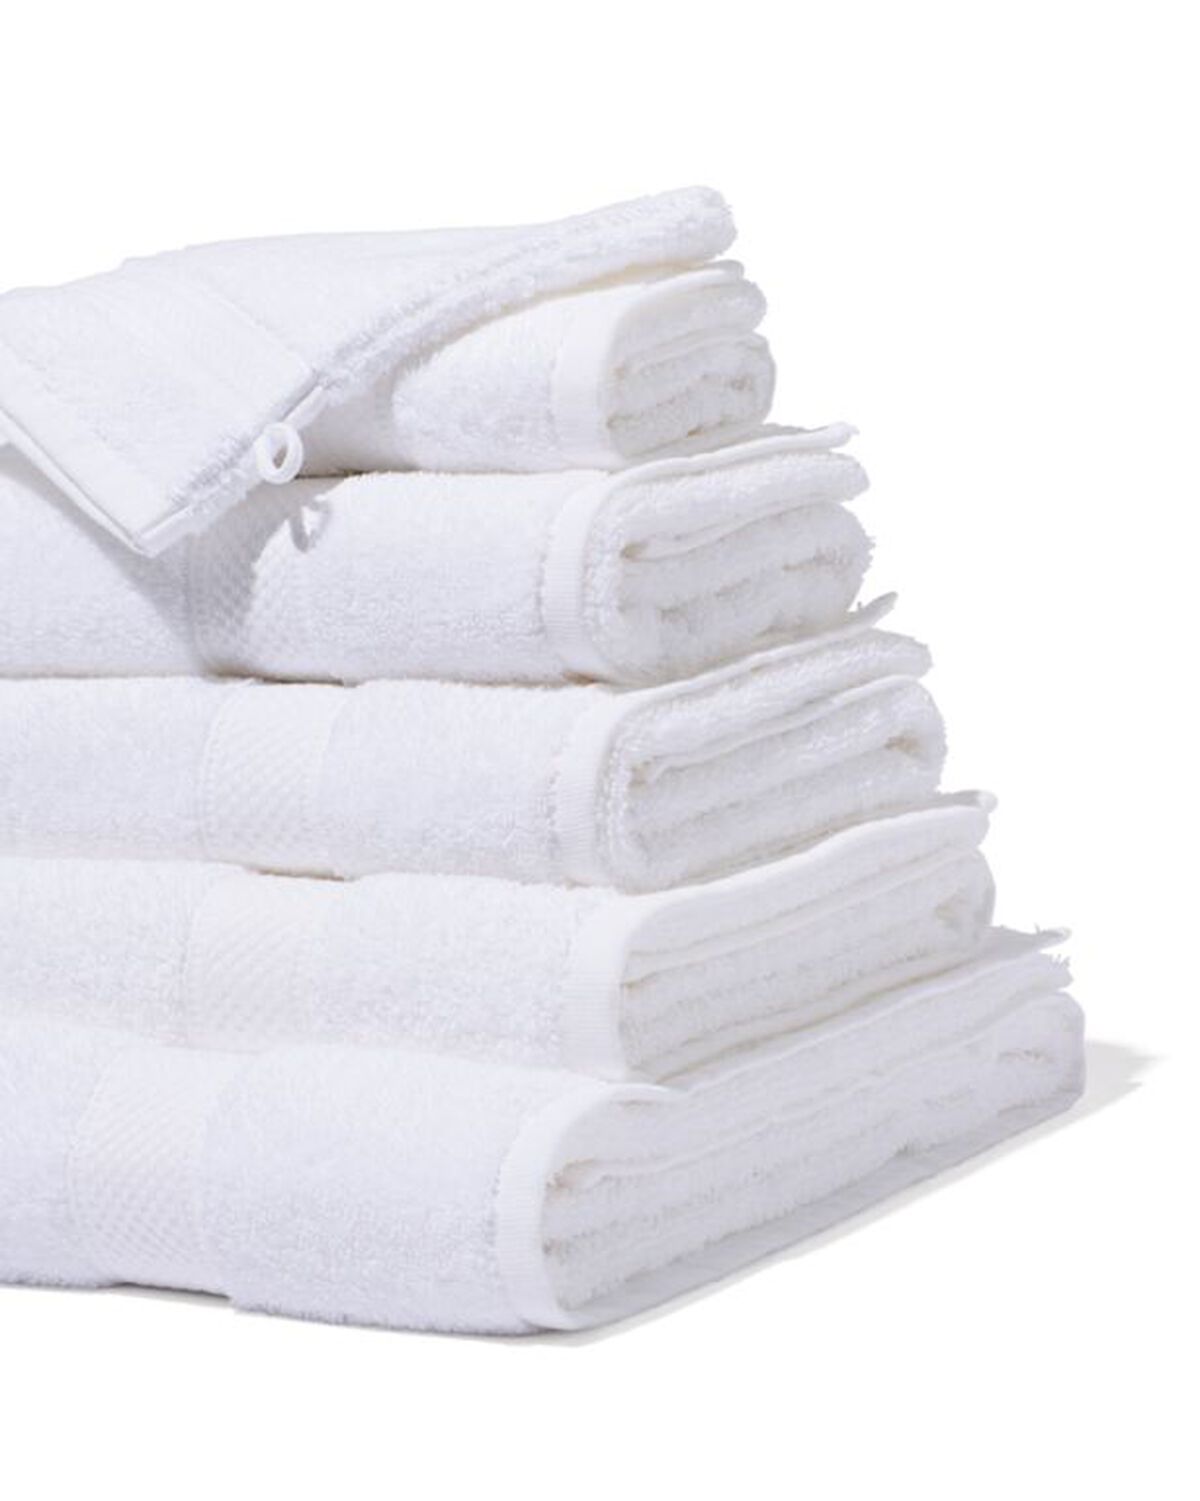 zware kwaliteit handdoeken wit - 200869 - HEMA